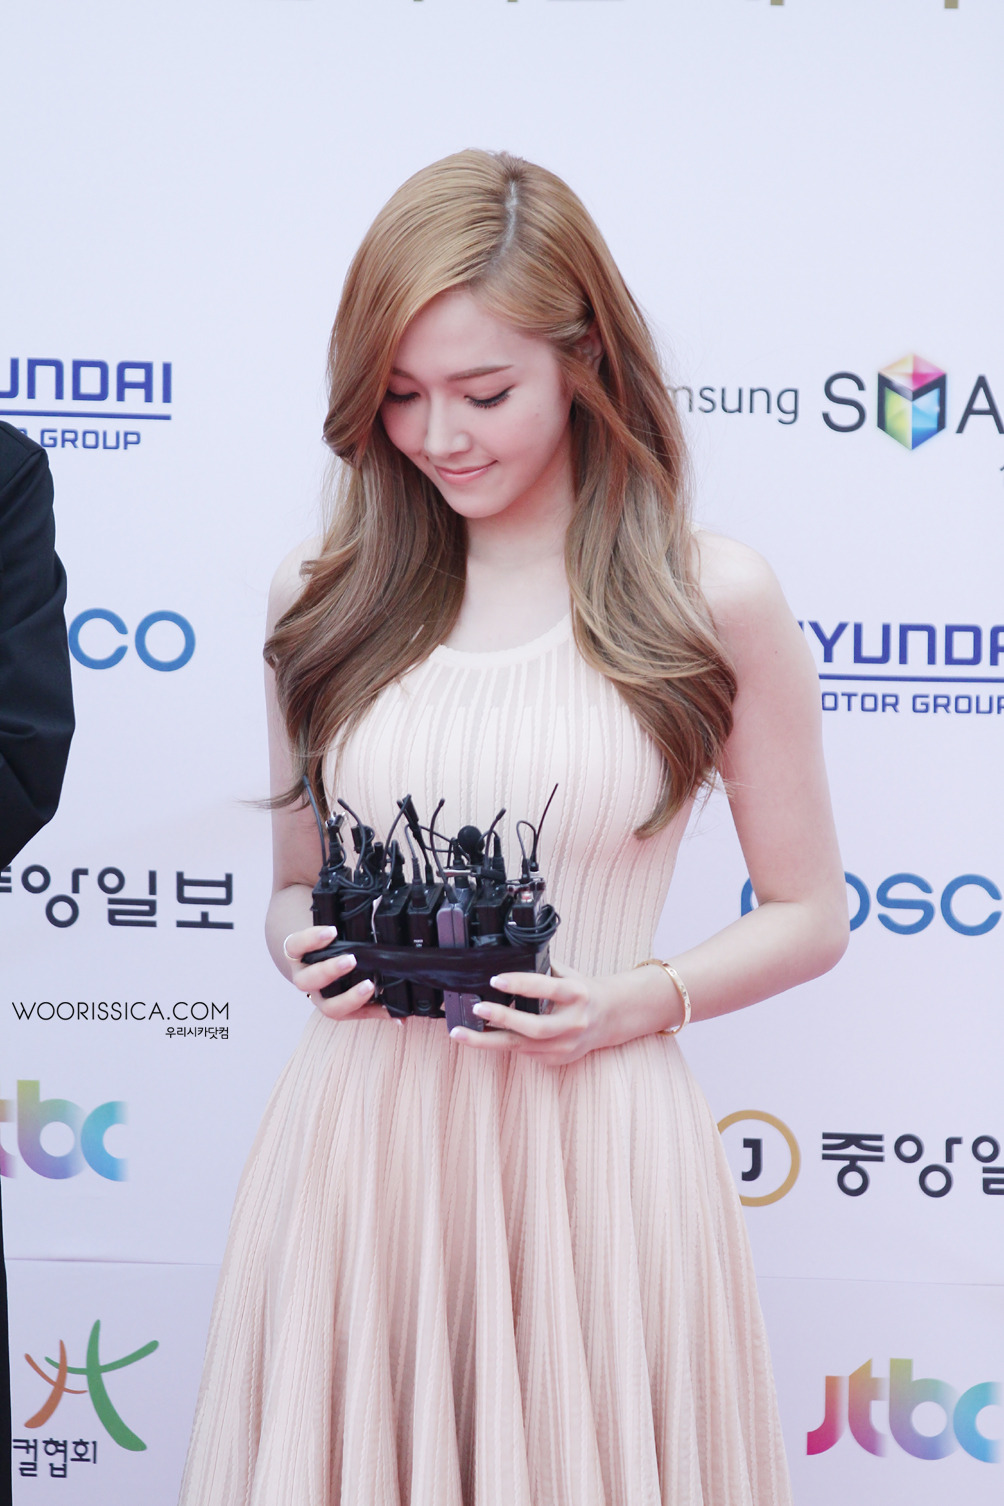 [PIC][03-06-2013]Jessica xuất hiện tại "7th Musical Award" vào chiều nay + Chiến thắng với giải thưởng "'Popular Actress" 2249573A51AC901F3423B4